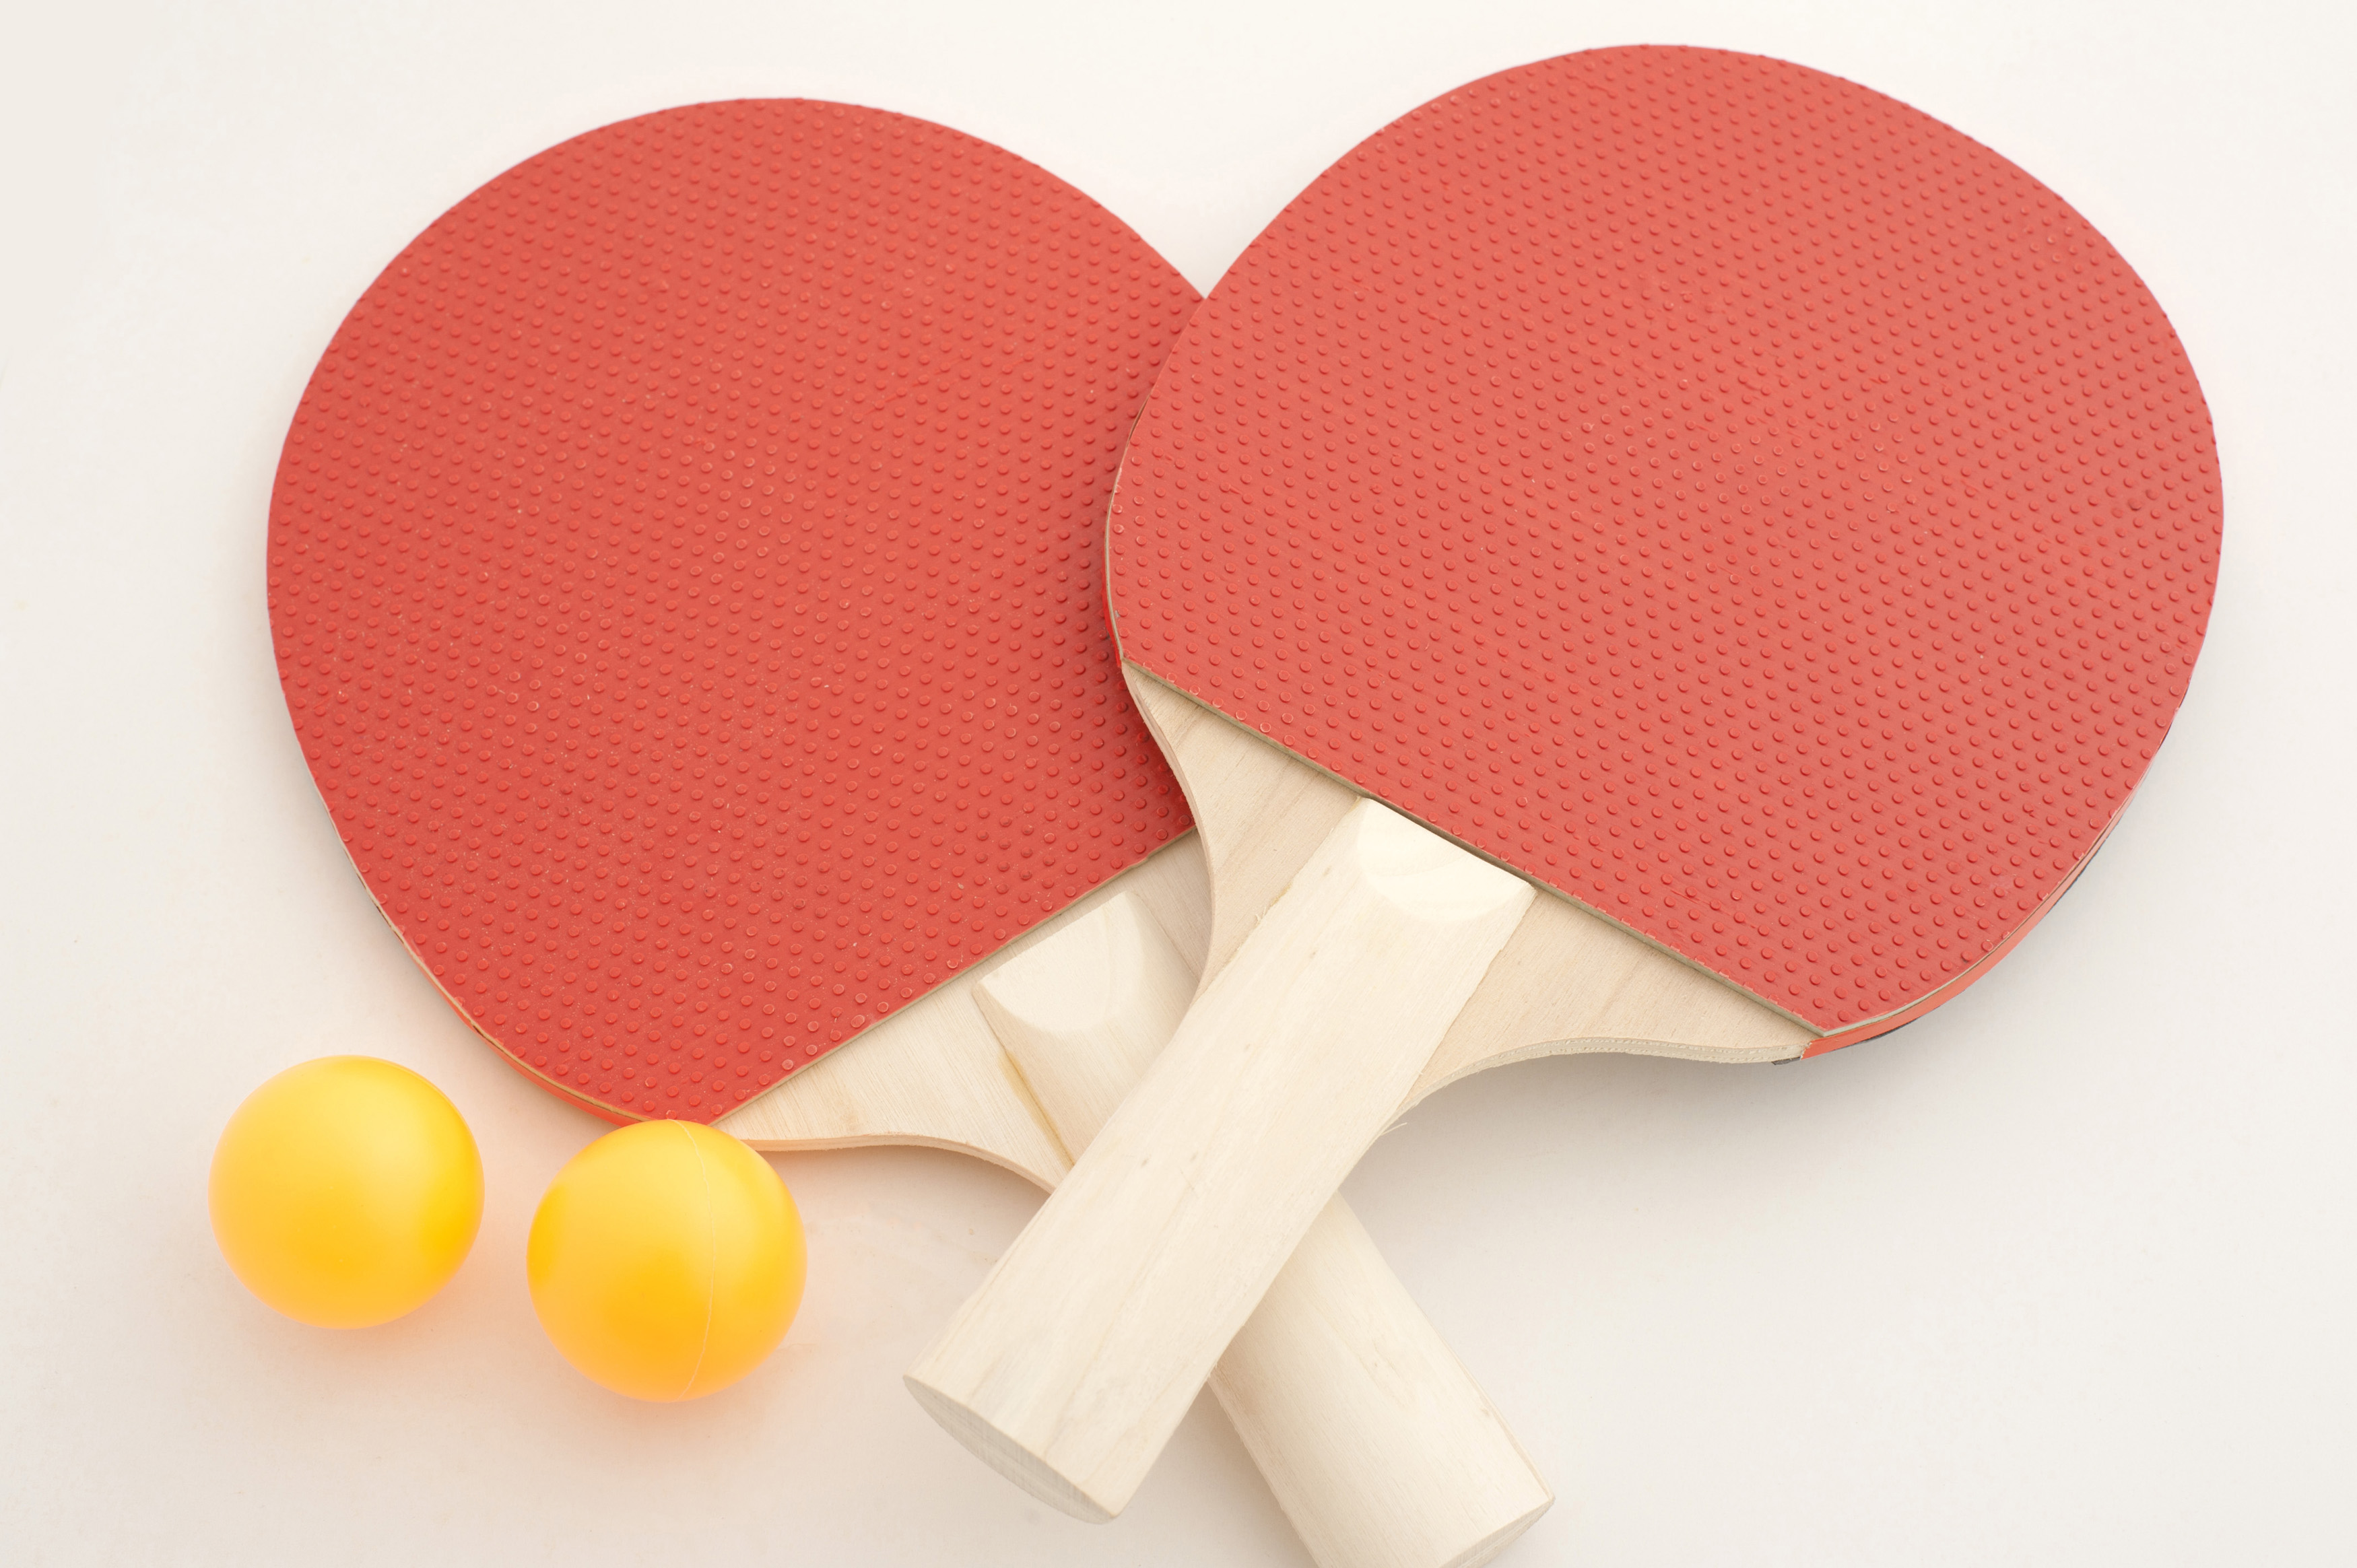 Table tennis bats balls and net